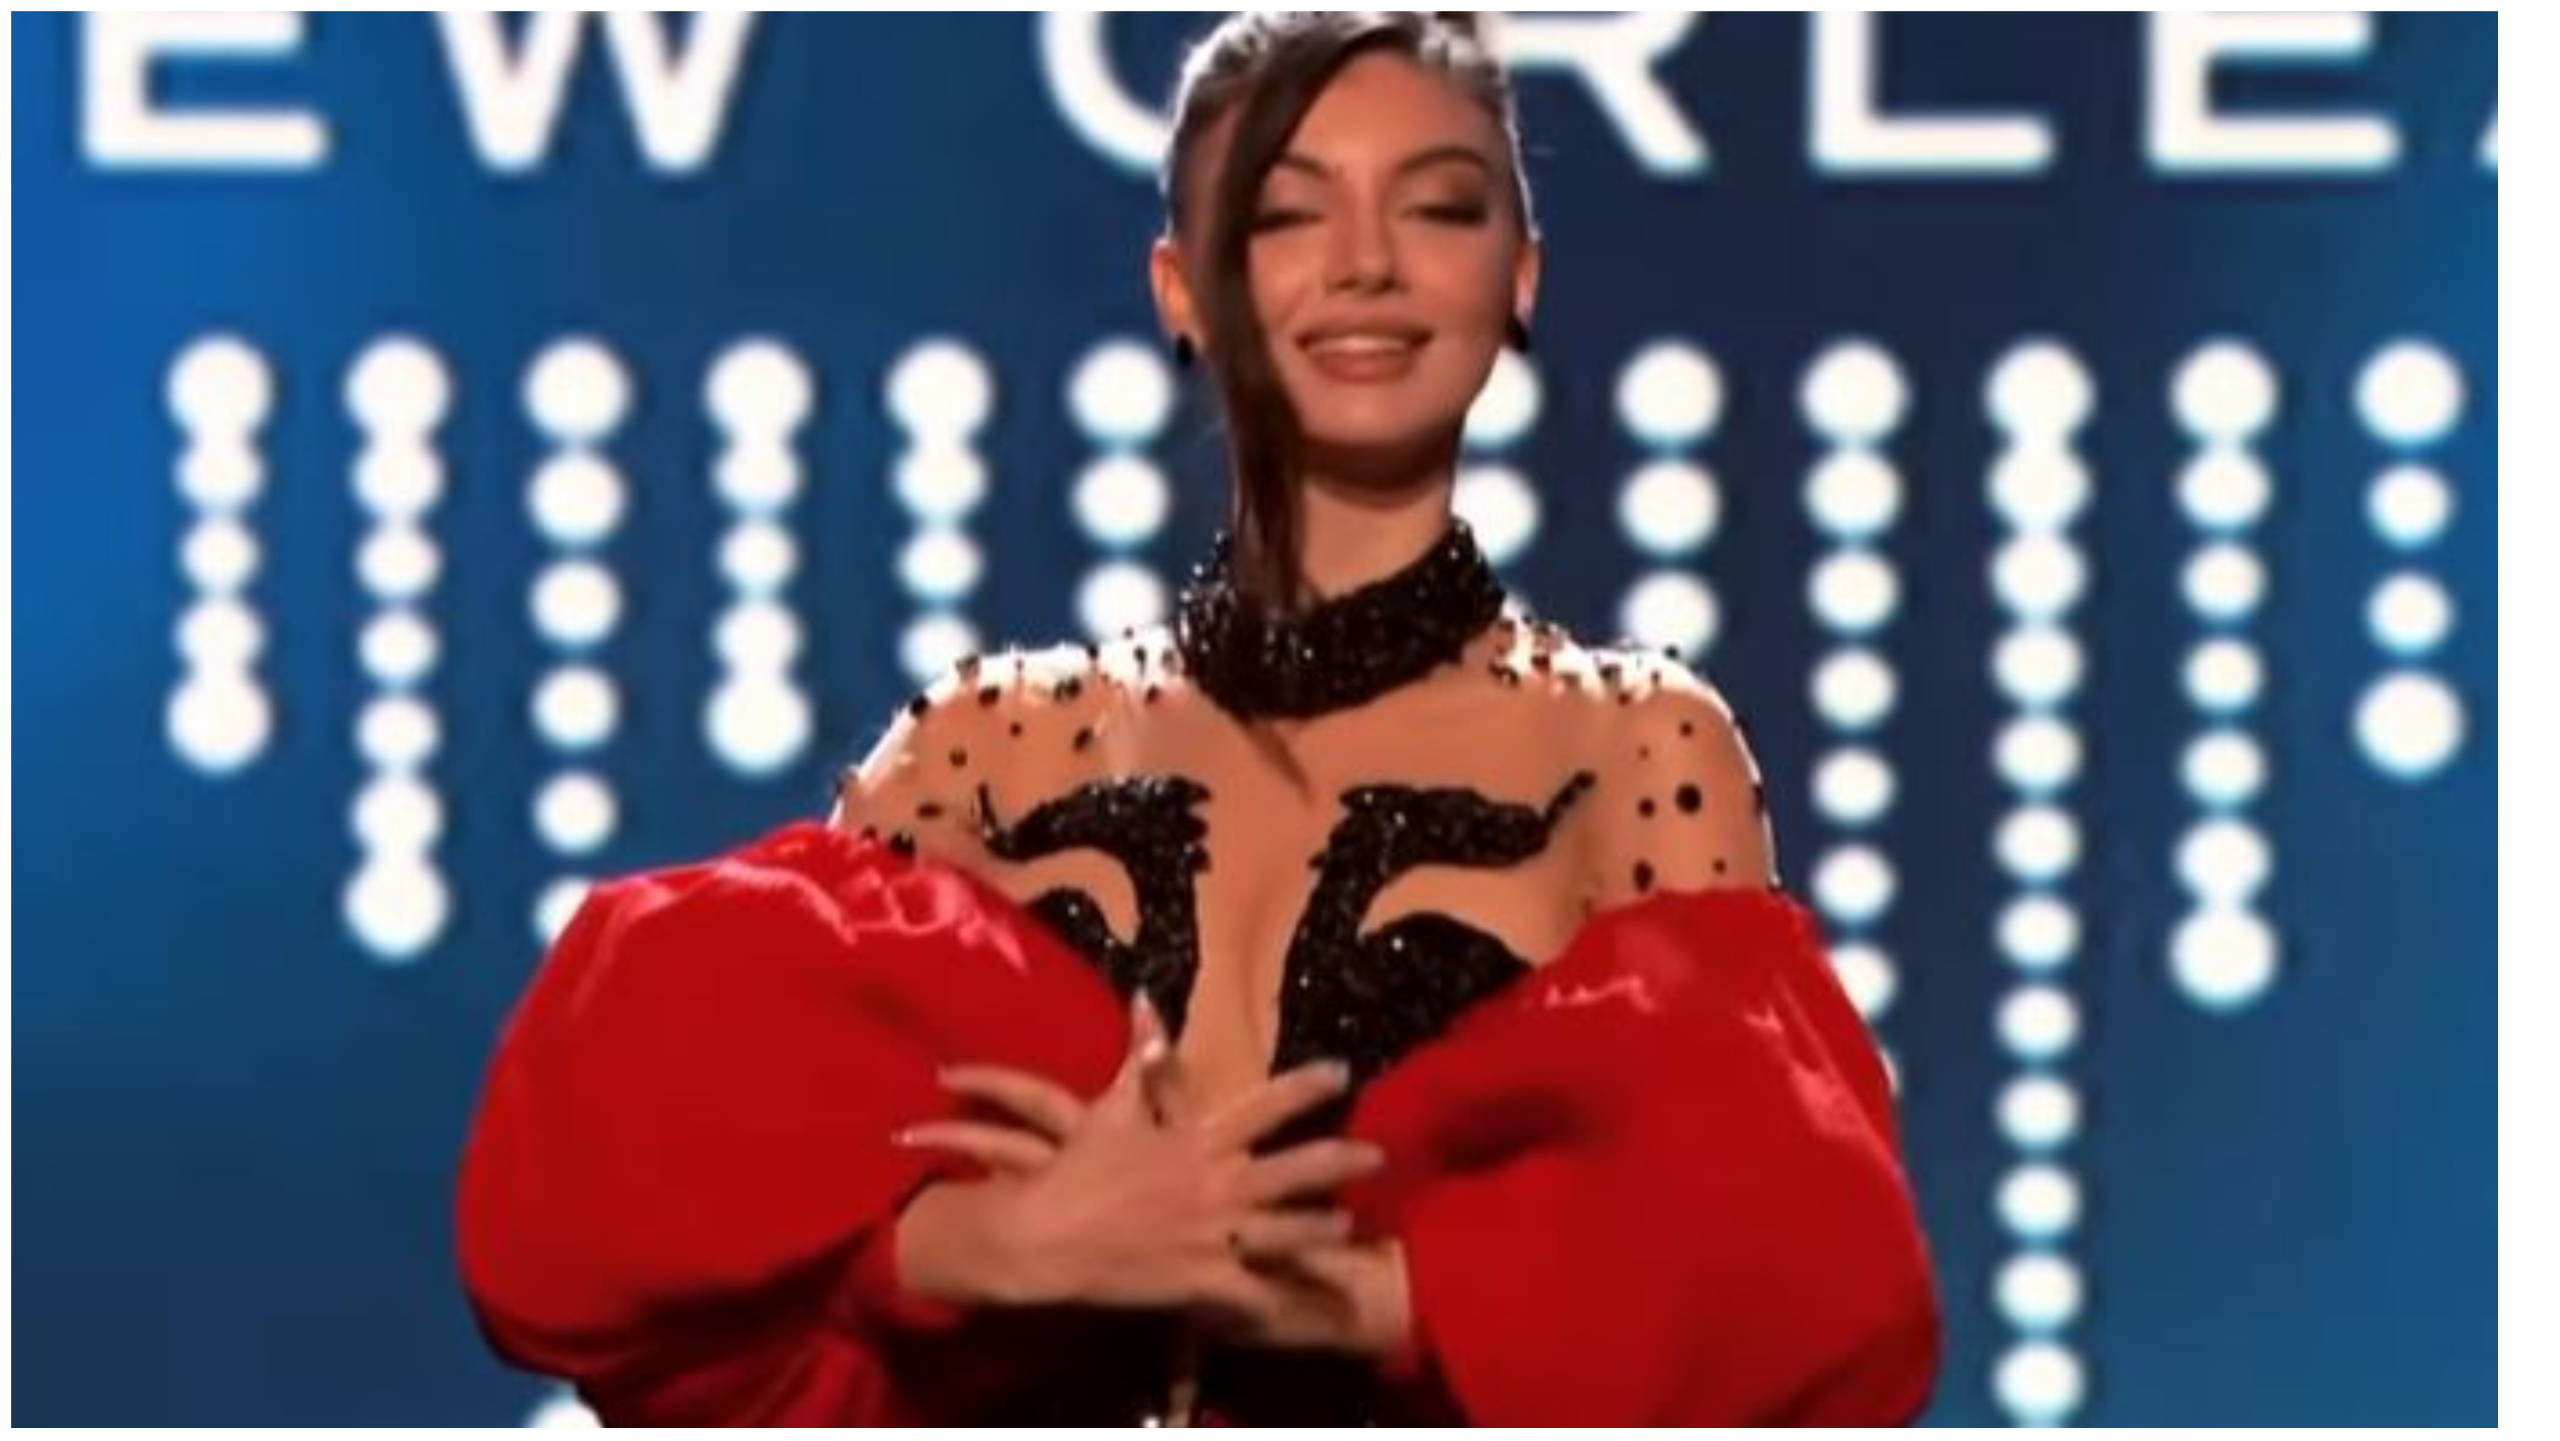 Kush u zgjodh vajza më e bukur në botë? Shqipëria u përfaqësua nga Deta Kokomani në Miss Universe